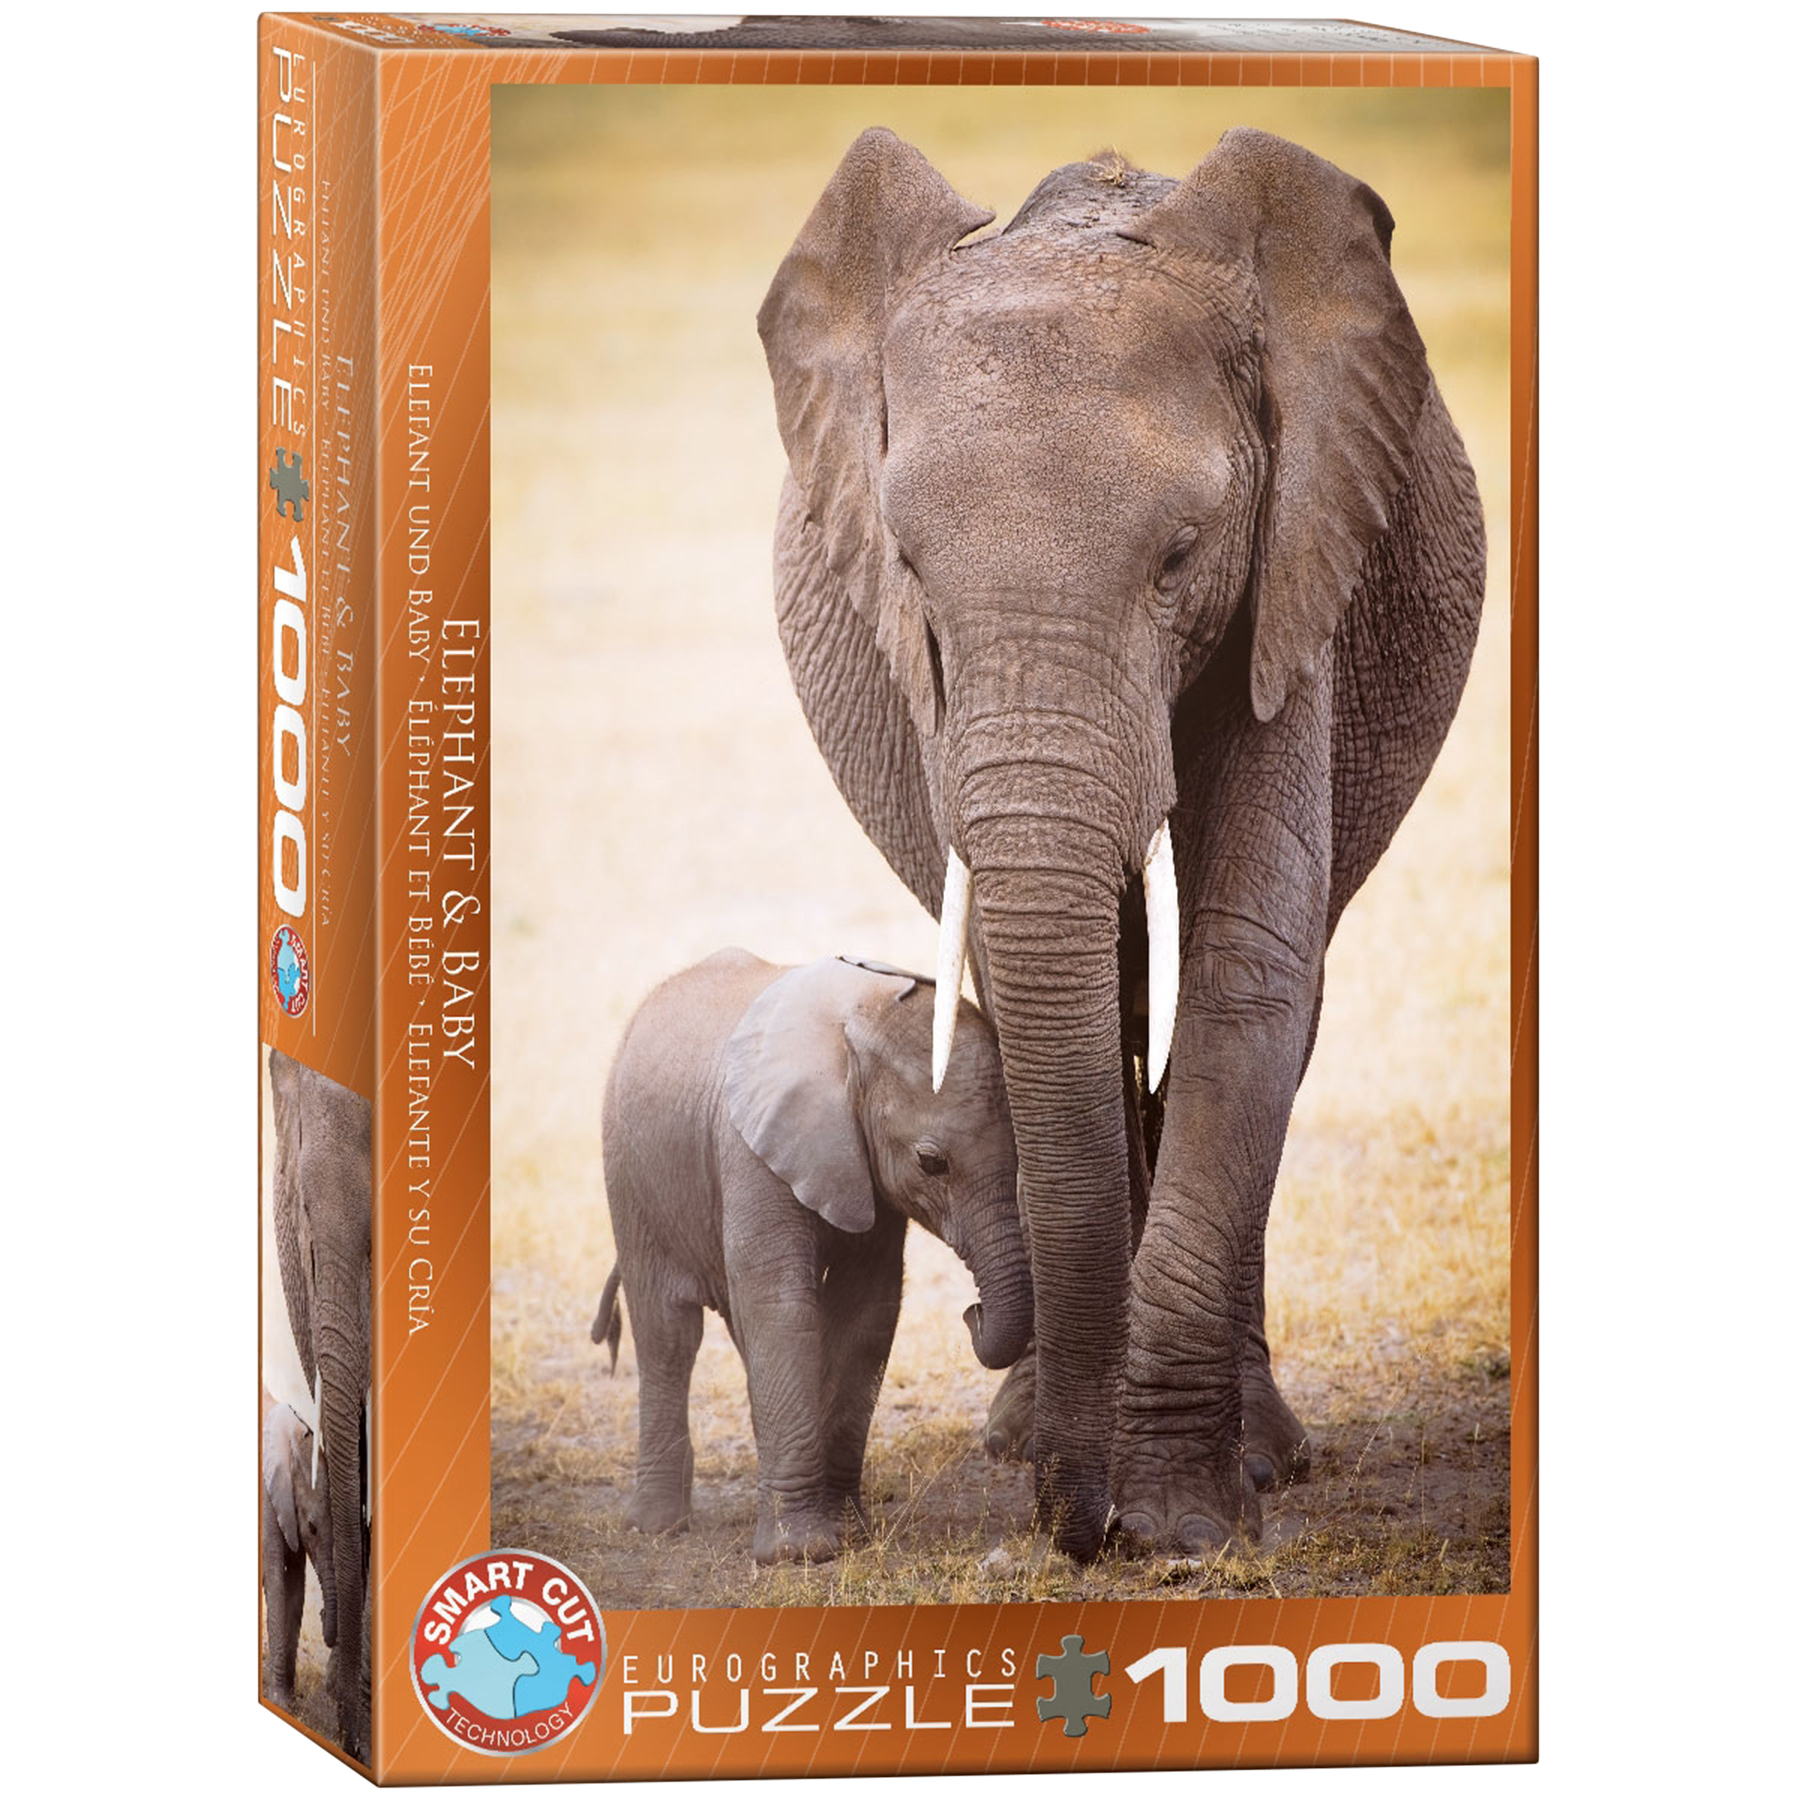 DER ELEFANT THE ELEPHANT Clementoni Puzzle 39416-1000 Pcs. 